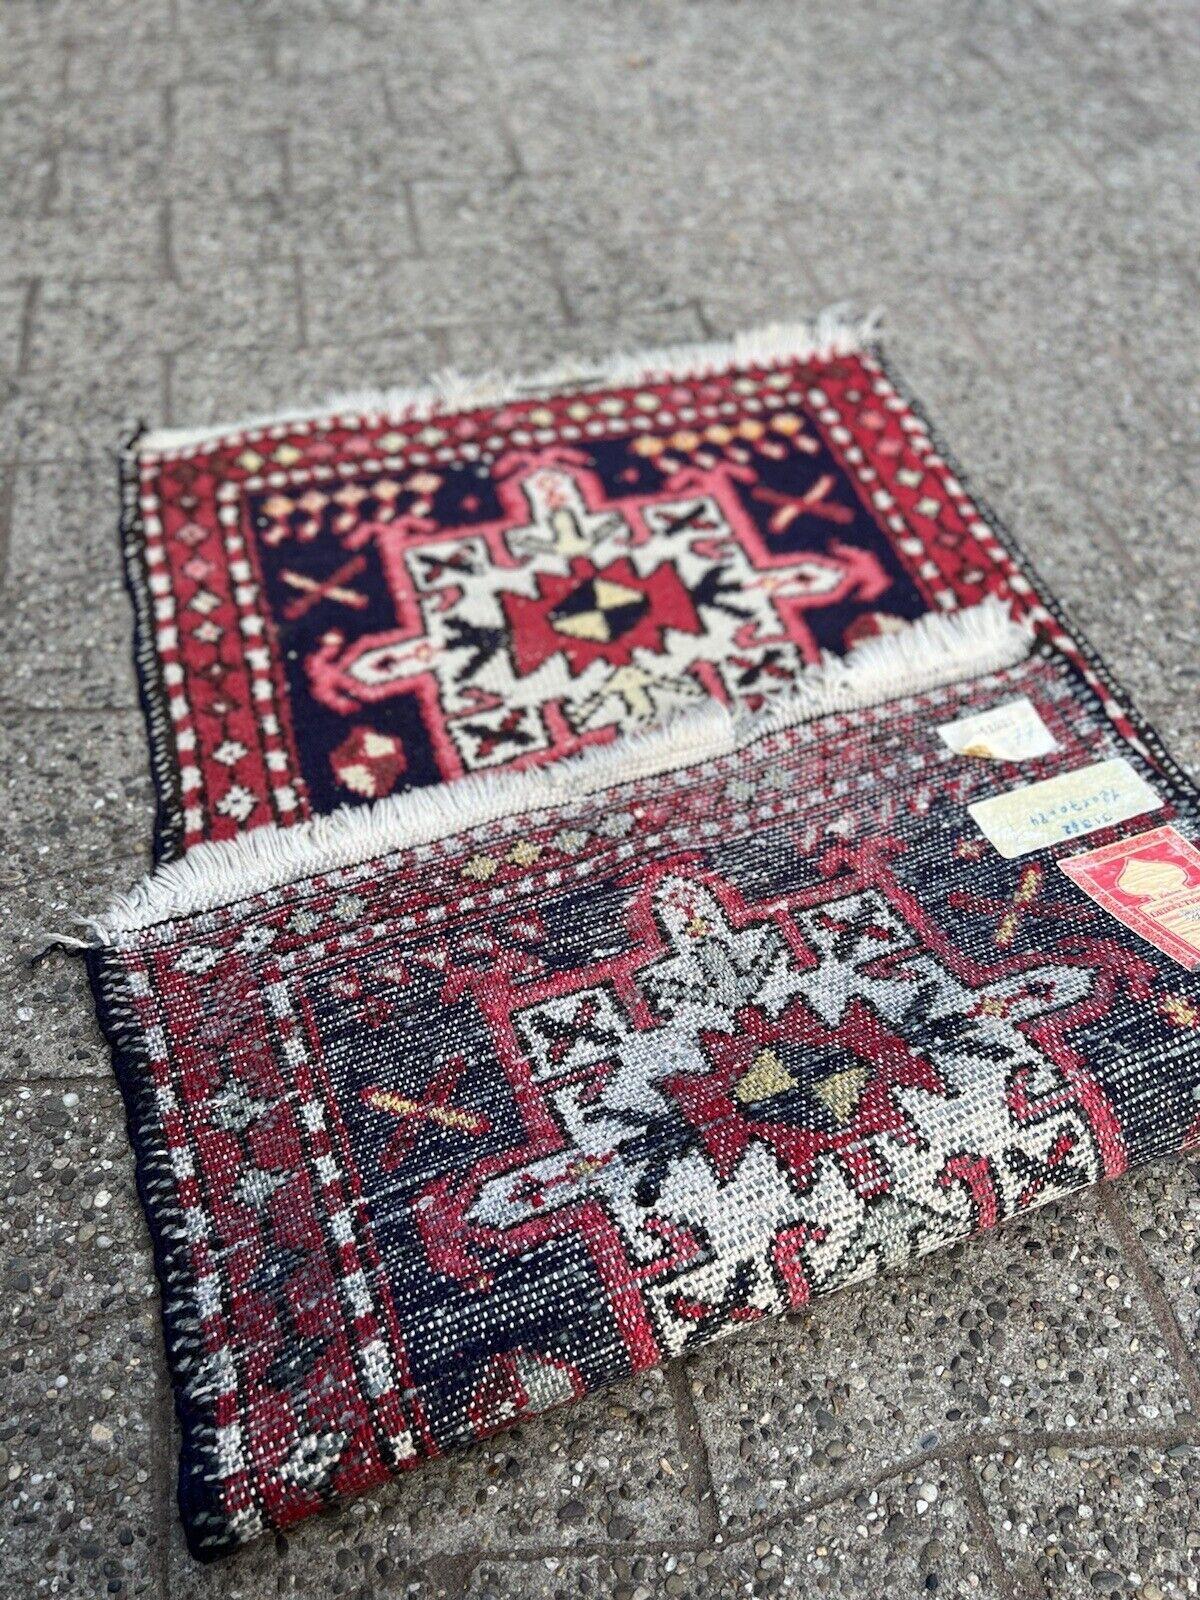 Entdecken Sie den Charme einer vergangenen Ära mit diesem handgefertigten Hamadan-Teppich im persischen Vintage-Stil. Dieser in den 1970er Jahren gefertigte Teppich misst 2,2' x 3,9' (70cm x 120cm) und ist ein wunderschönes Beispiel für die